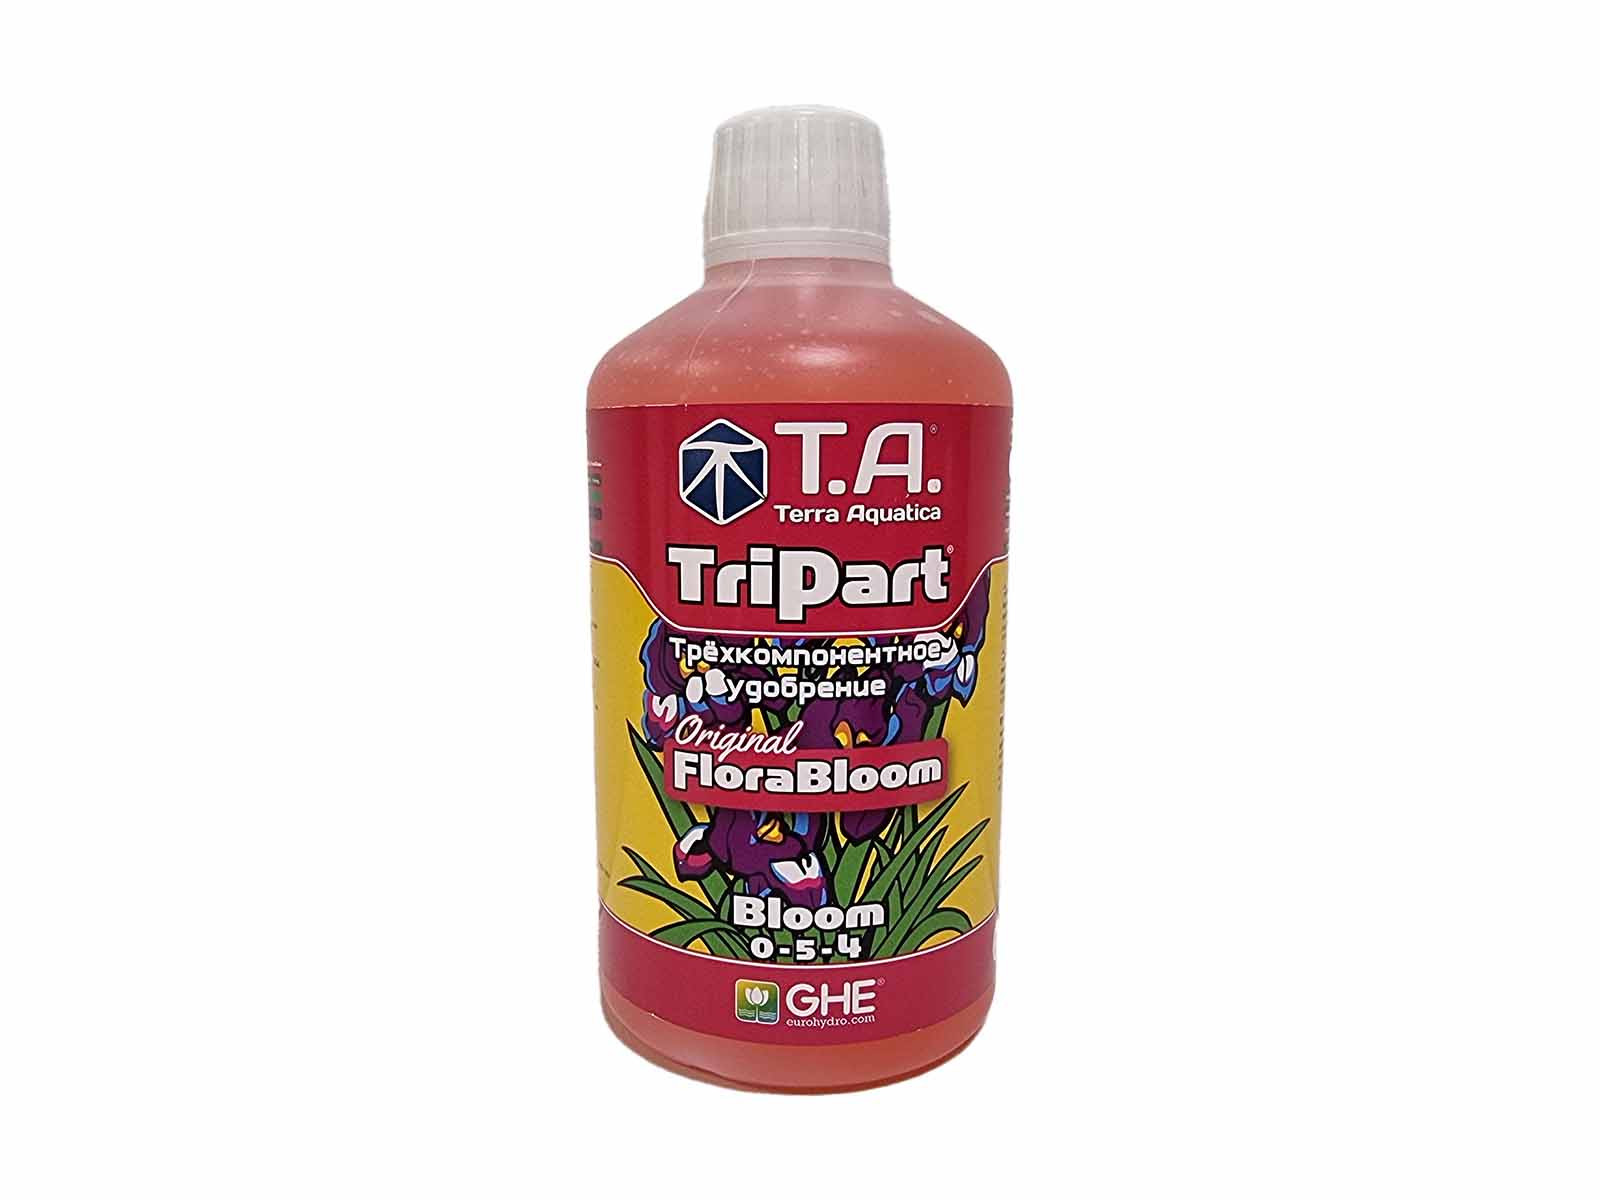 Удобрение TriPart Bloom T